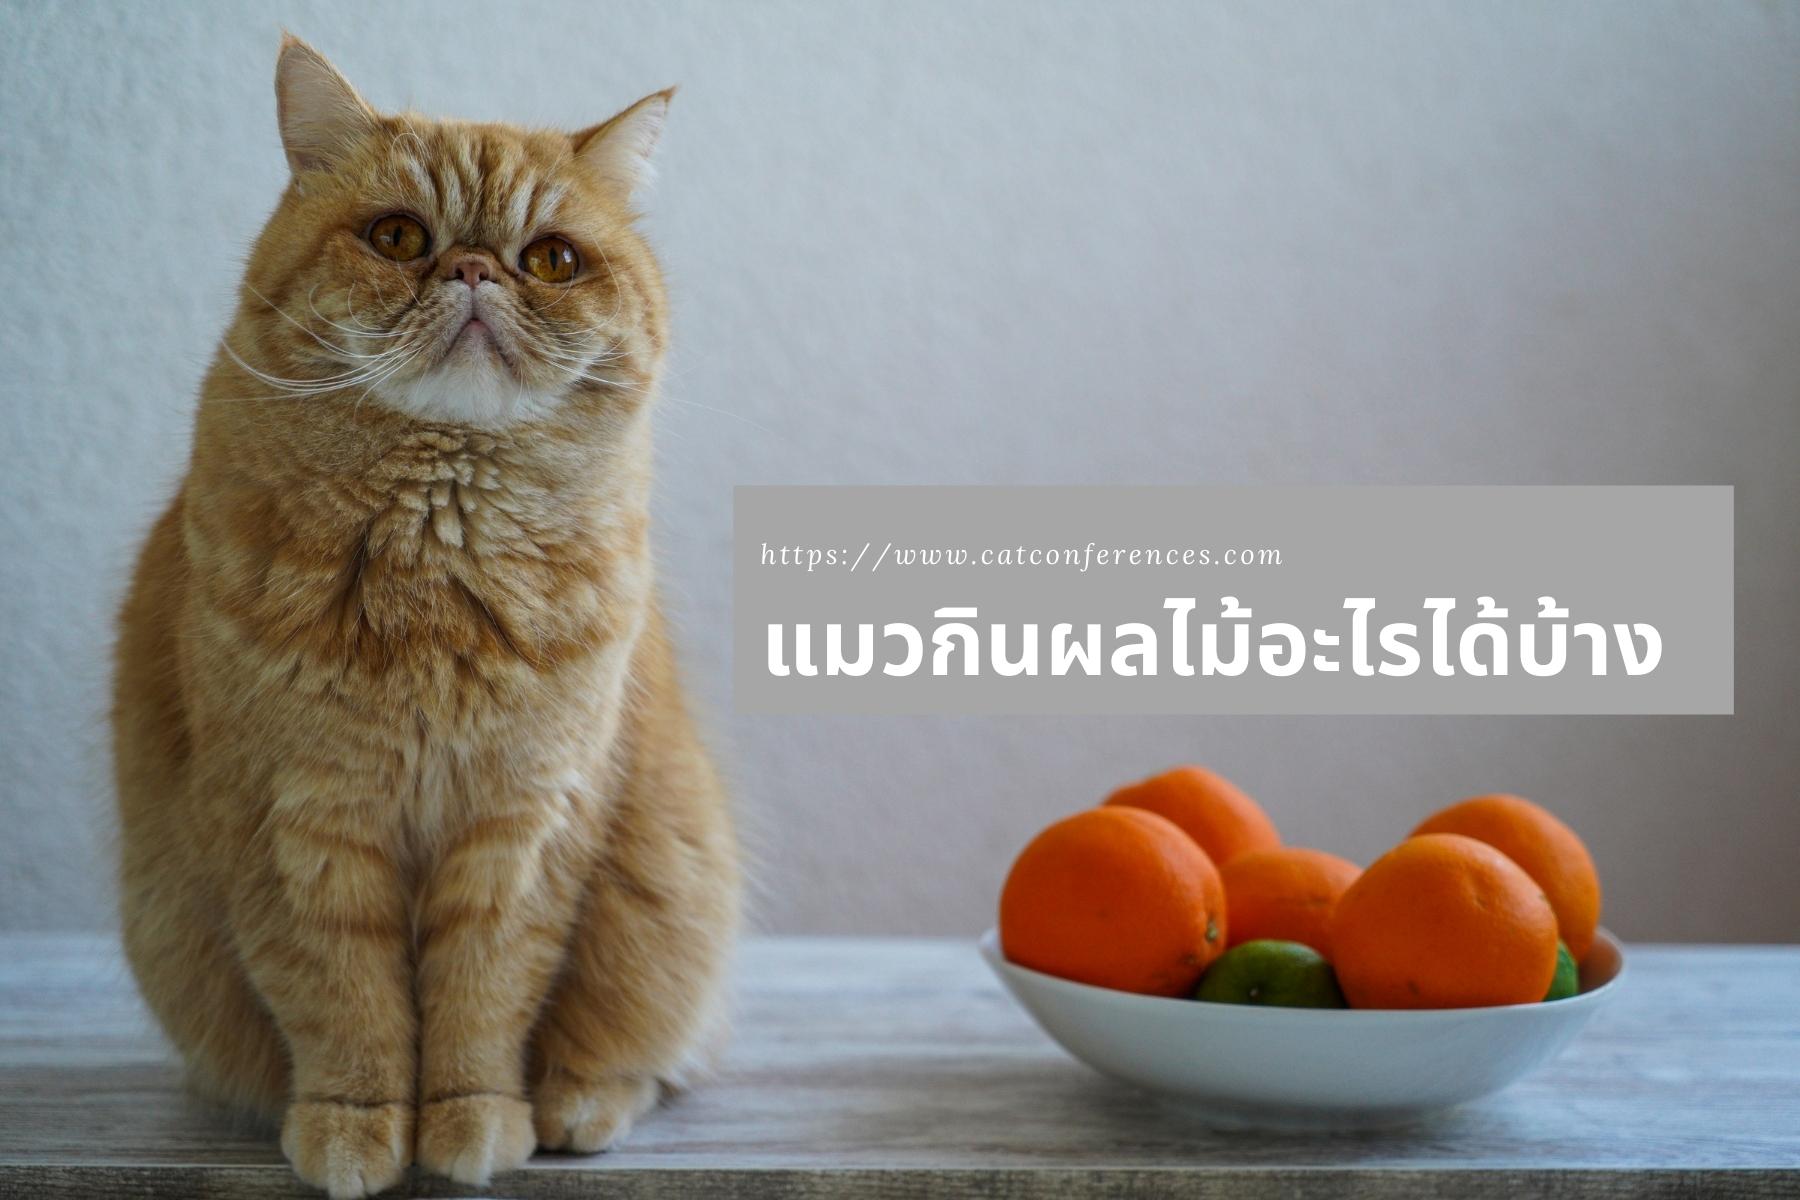 แมวกินผลไม้อะไรได้บ้าง